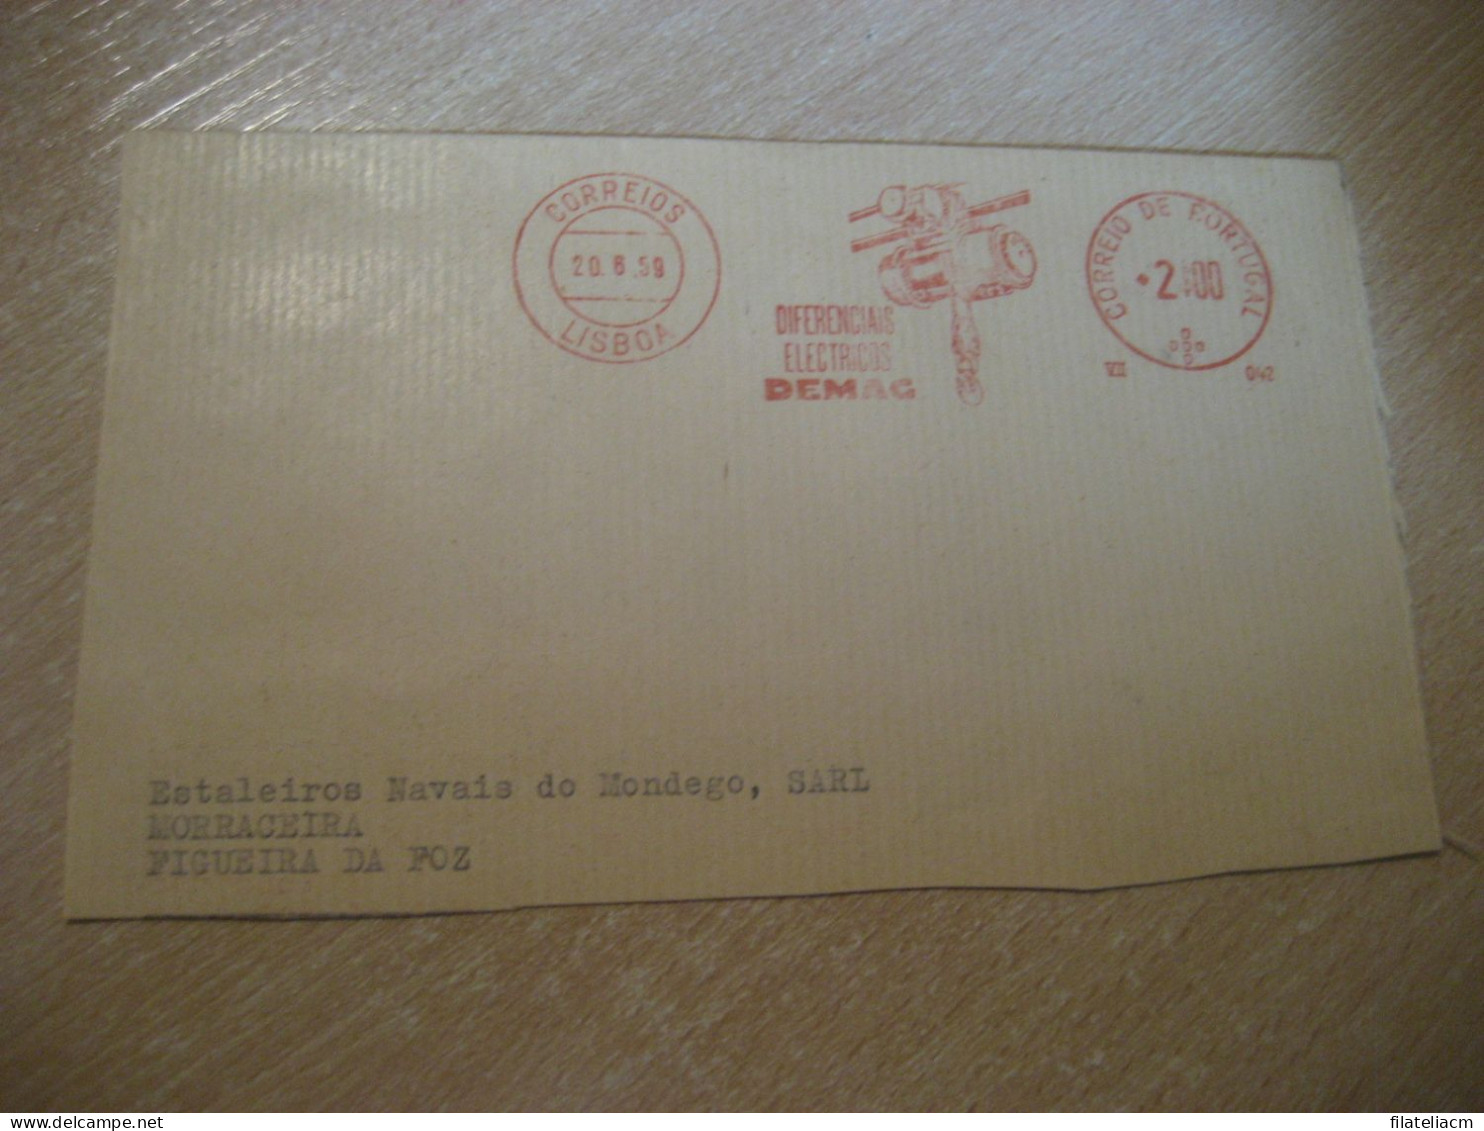 LISBOA 1959 To Figueira Da Foz DEMAC Diferenciais Electricos Physics Meter Mail Cancel Cut Cuted Cover PORTUGAL - Cartas & Documentos